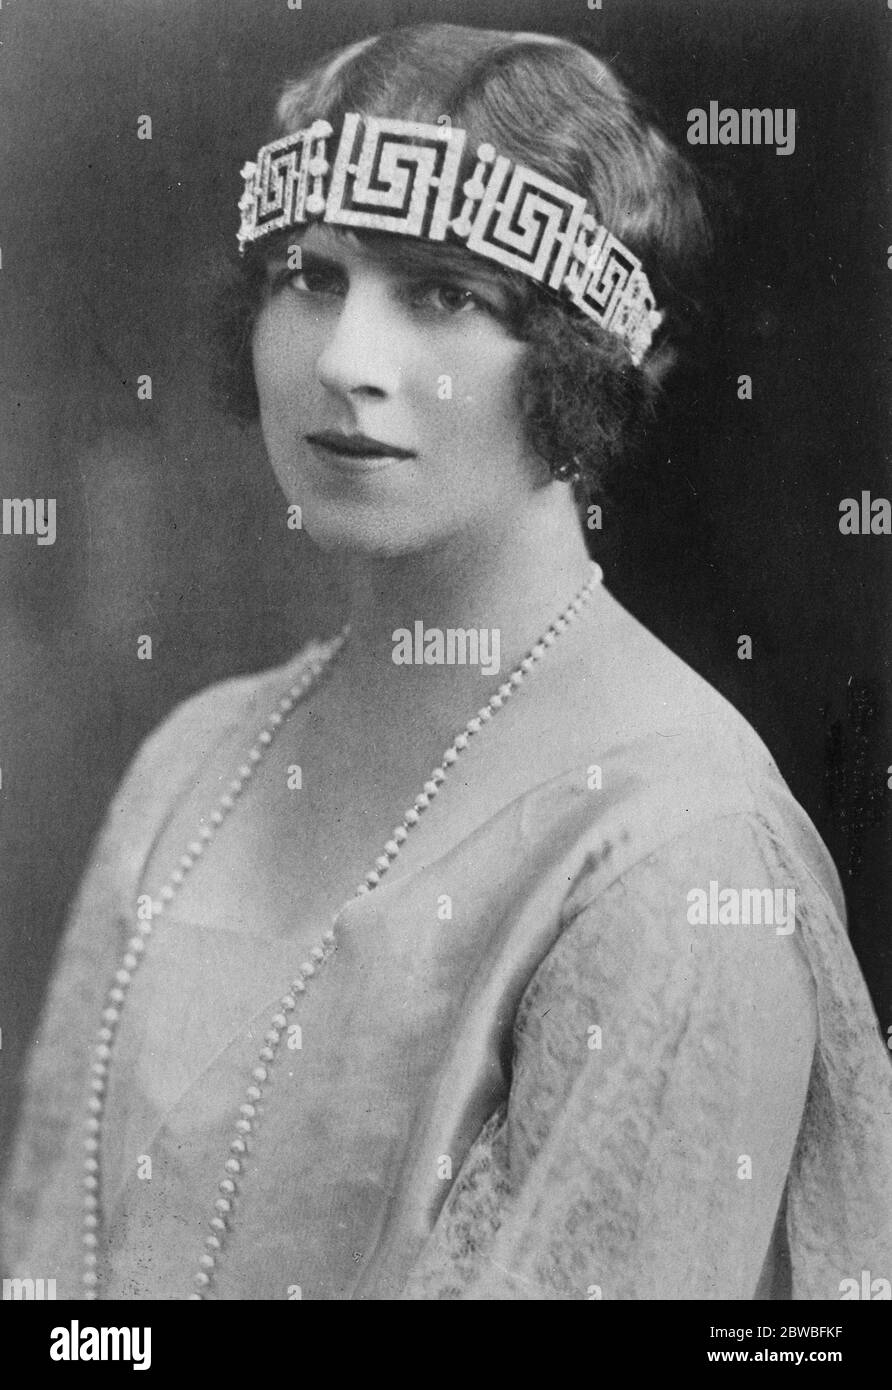 Femme de l'héritier d'un trône troublé UNE nouvelle image frappante de la princesse de la Couronne de Roumanie , un pays qui est actuellement un état de troubles aigus 5 avril 1923 Banque D'Images